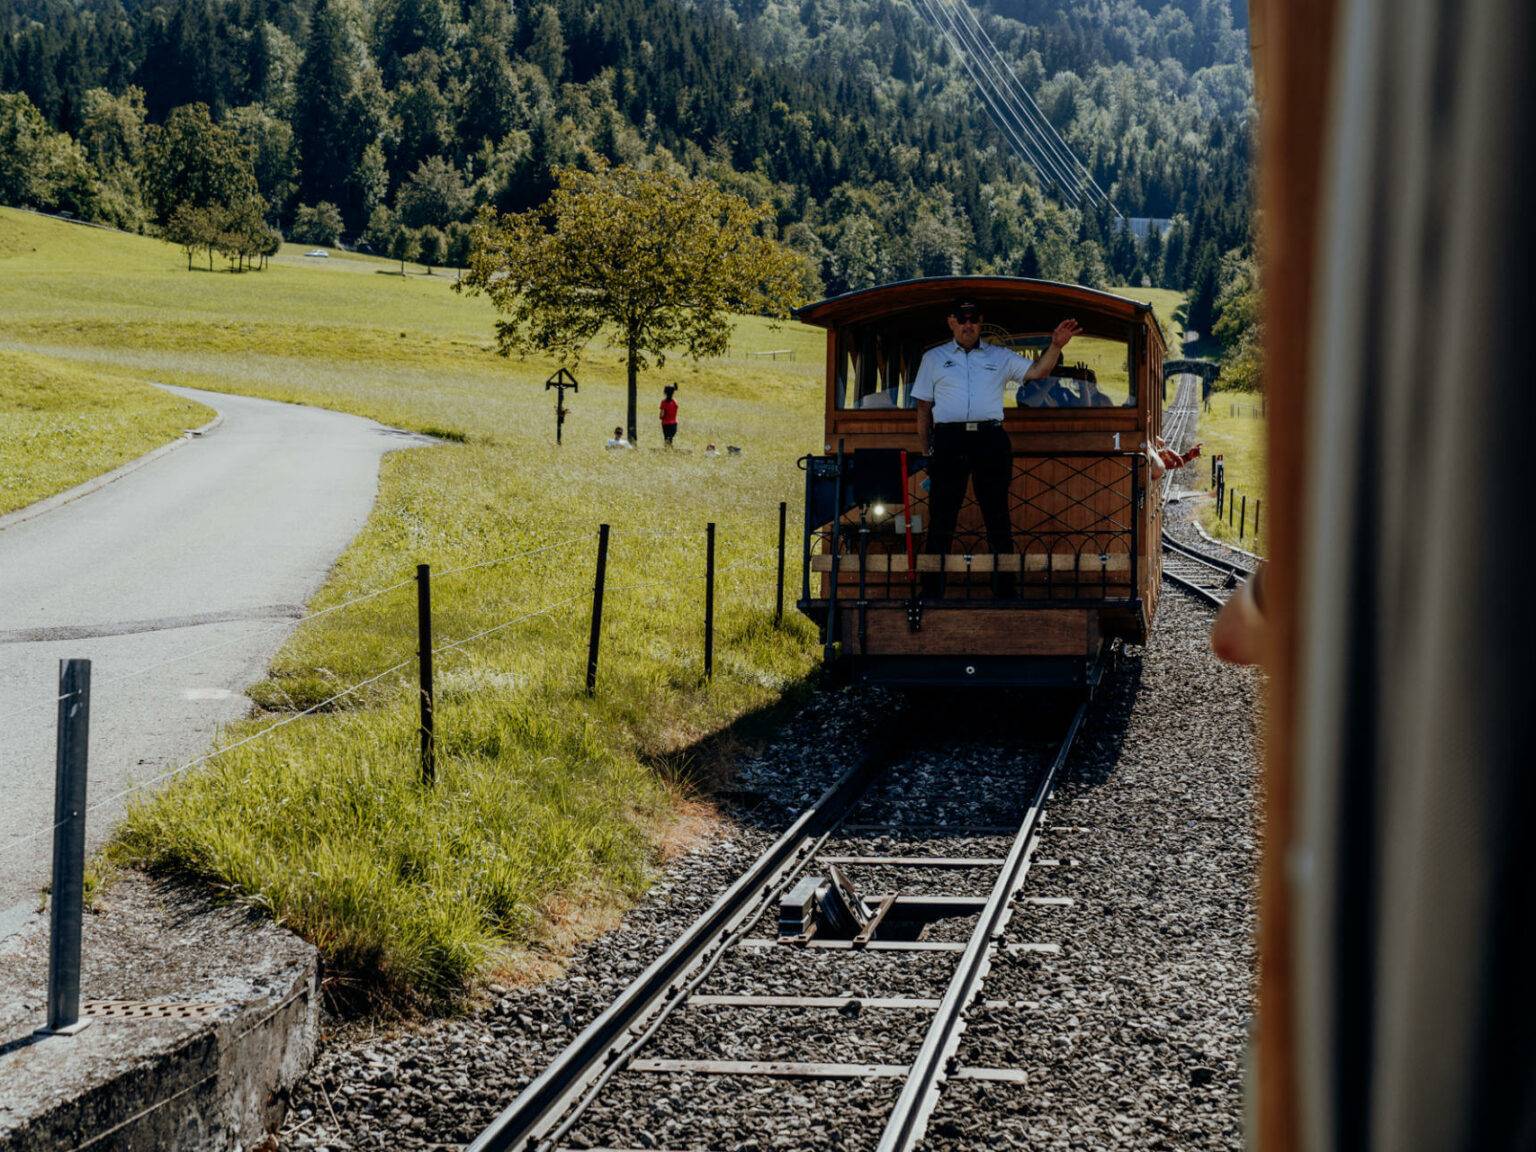 Eine Oldtimer-Standseilbahn fährt über Gleise auf Kies, im Hintergrund liegt ein Wald, links neben der Bahn verläuft ein Weg.